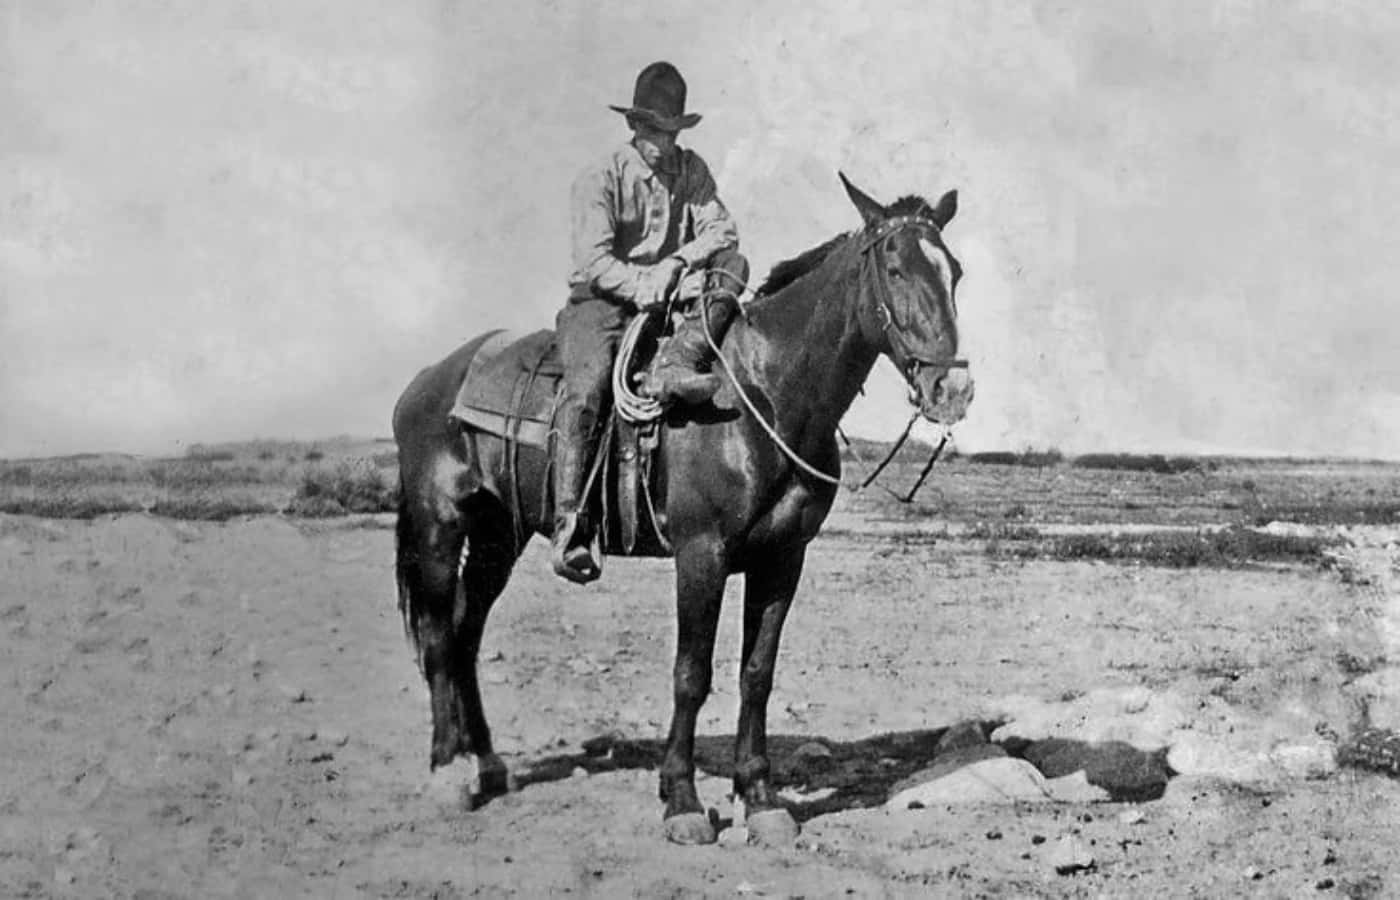 Fotodi Un Vecchio Cowboy In Bianco E Nero Su Un Cavallo